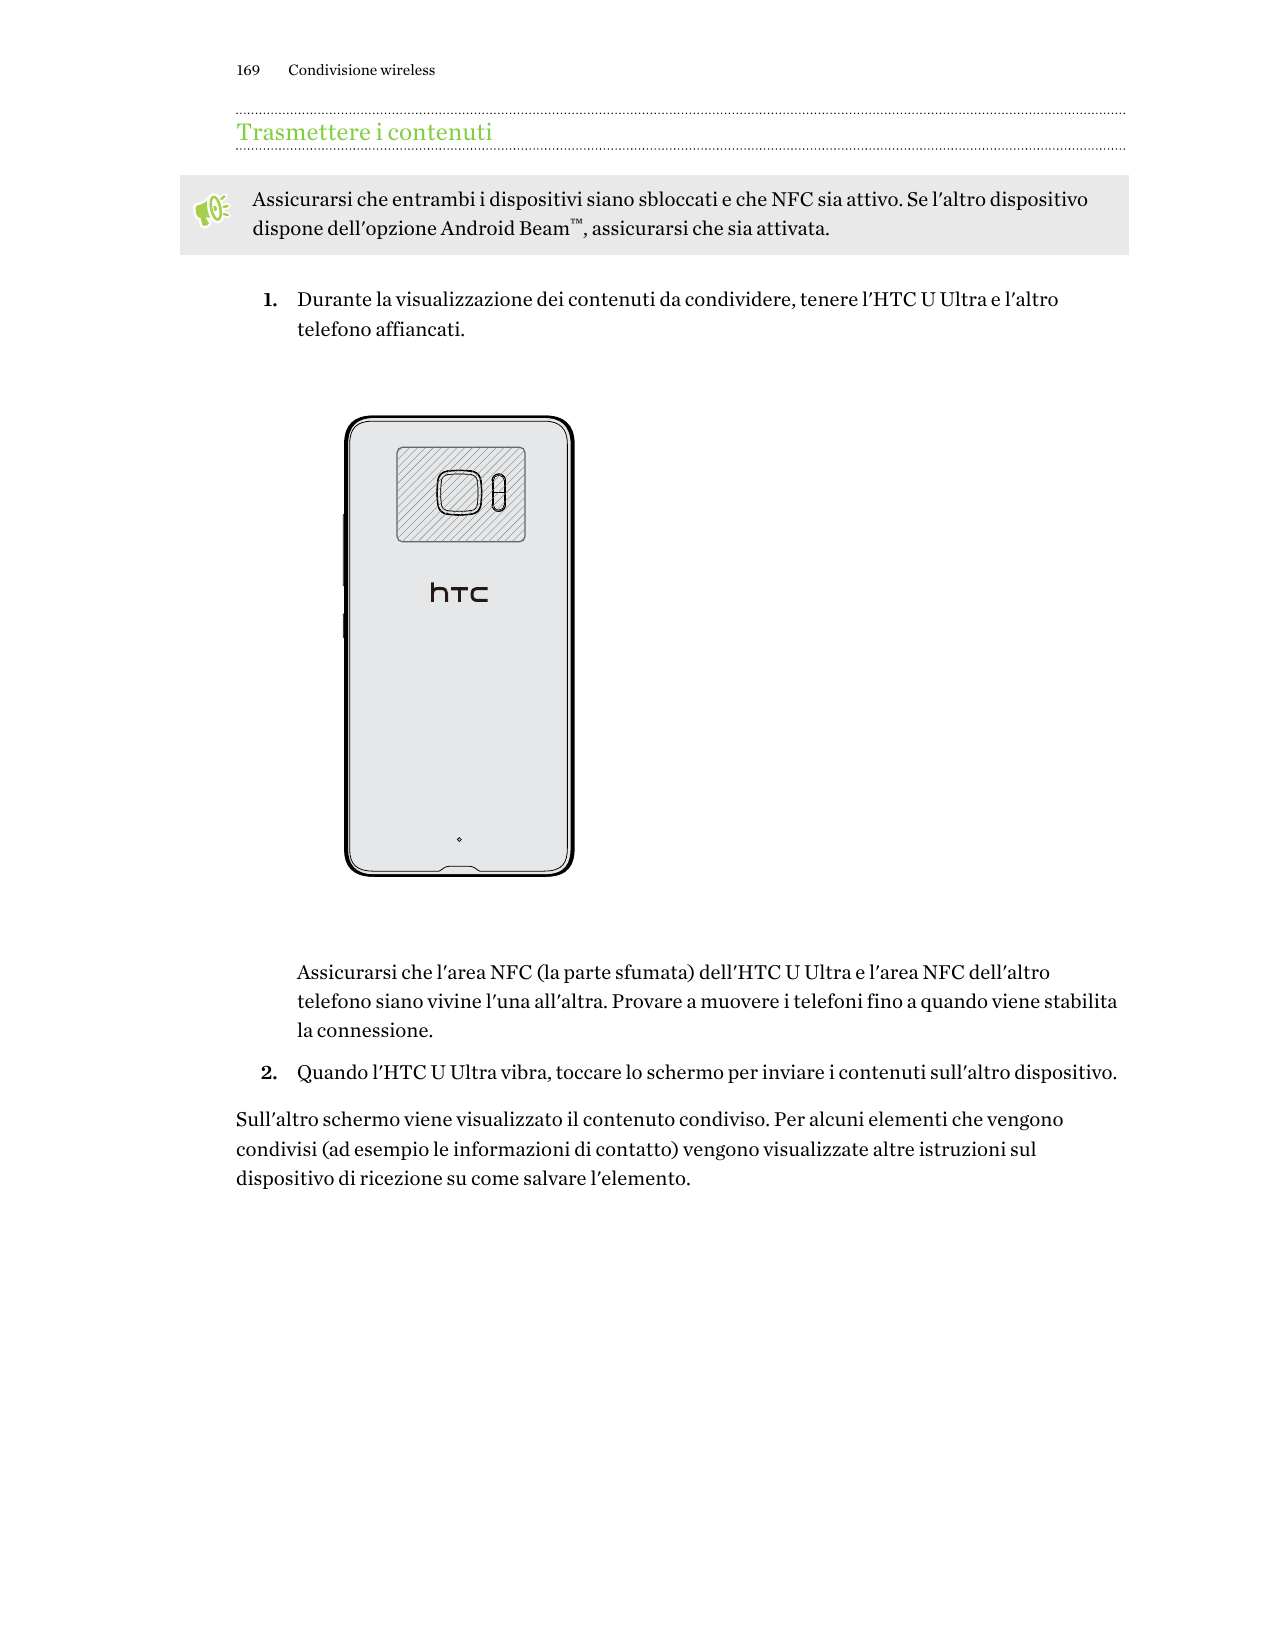 169Condivisione wirelessTrasmettere i contenutiAssicurarsi che entrambi i dispositivi siano sbloccati e che NFC sia attivo. Se l